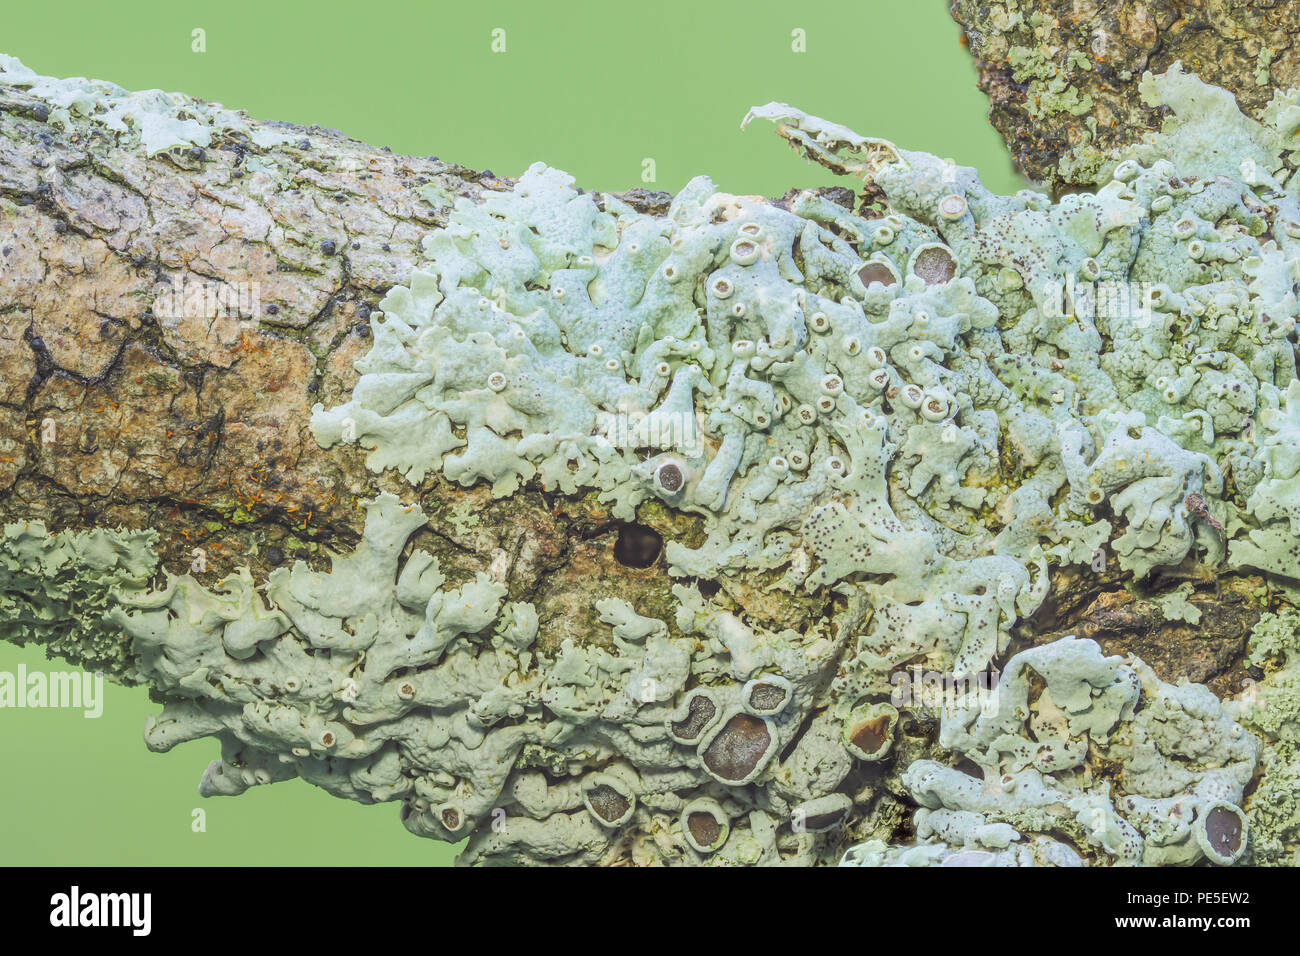 Starry Rosette Lichen (Physcia stellaris), a small foliose lichen, grows on a tree branch. Stock Photo